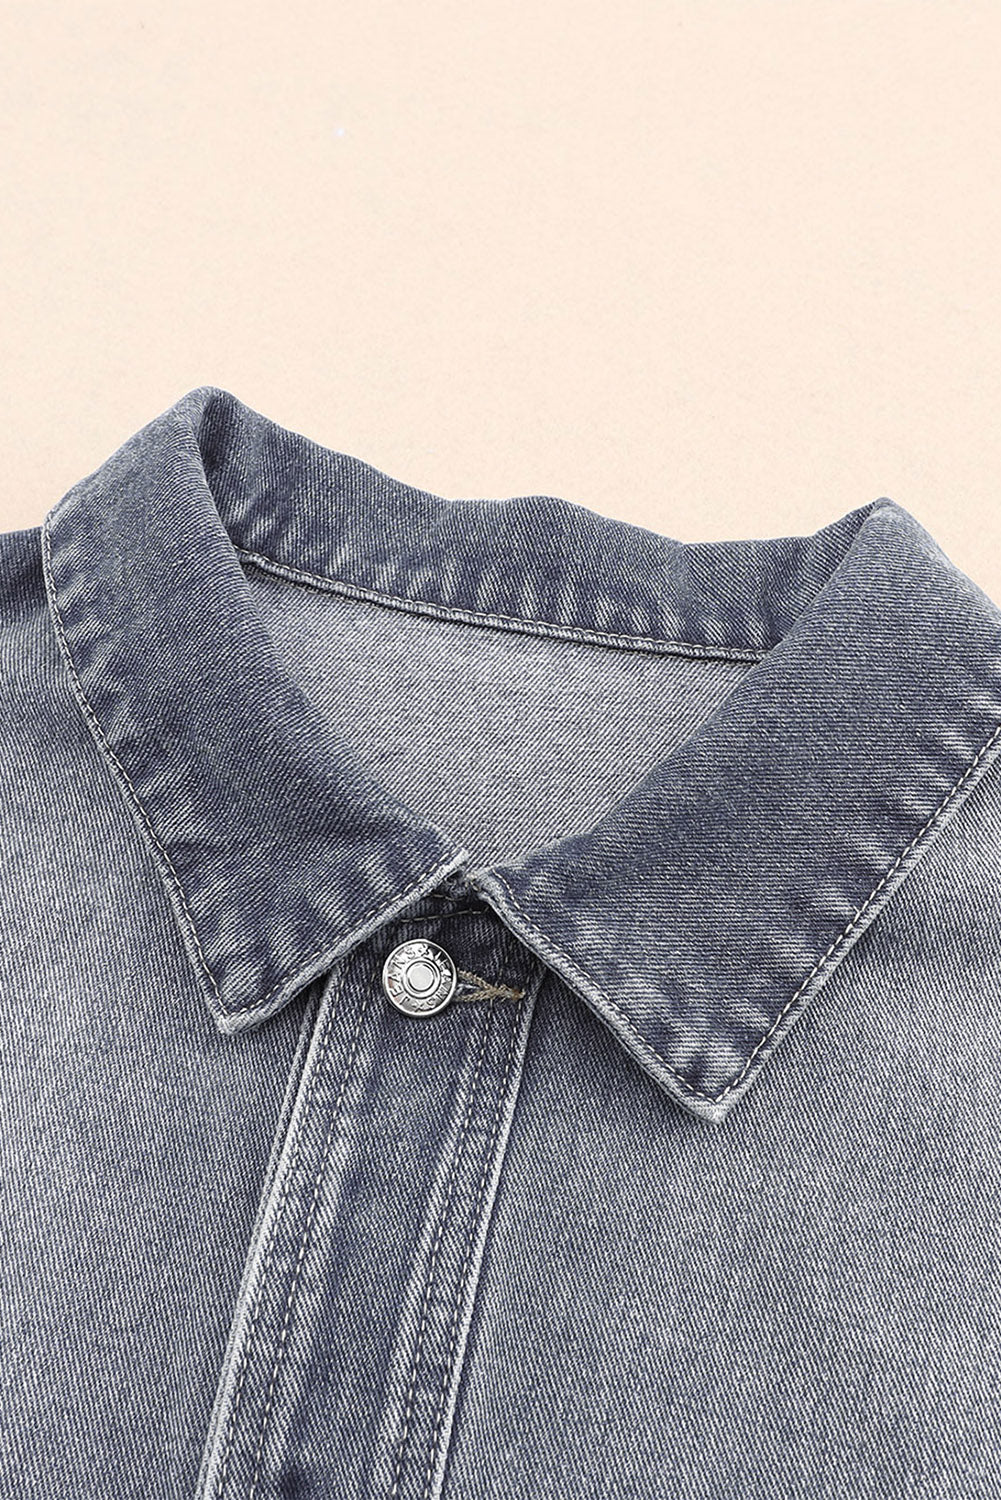 Gray Chest Pockets Drop Shoulder Loose Denim Jacket